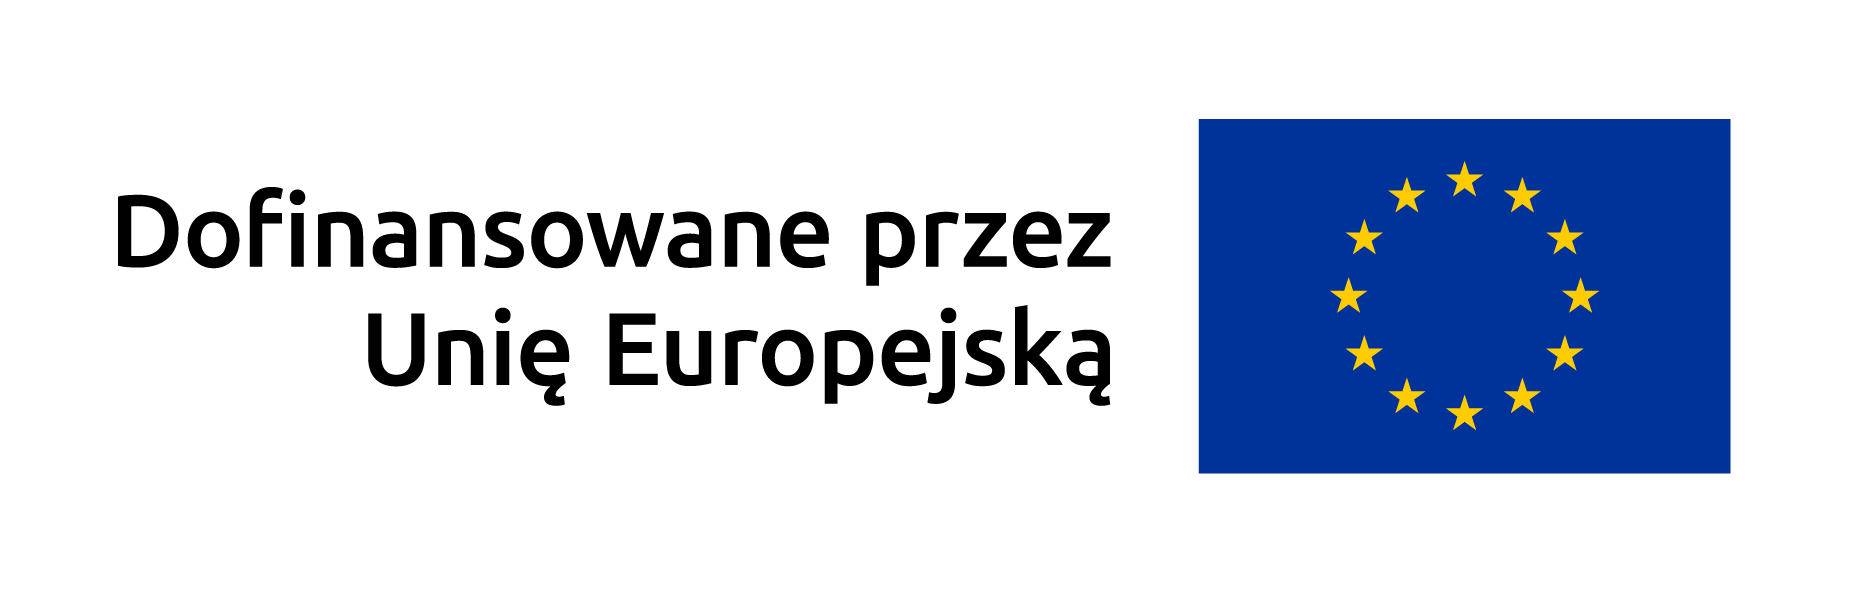 Logo dofinansowane przez Unię europejską